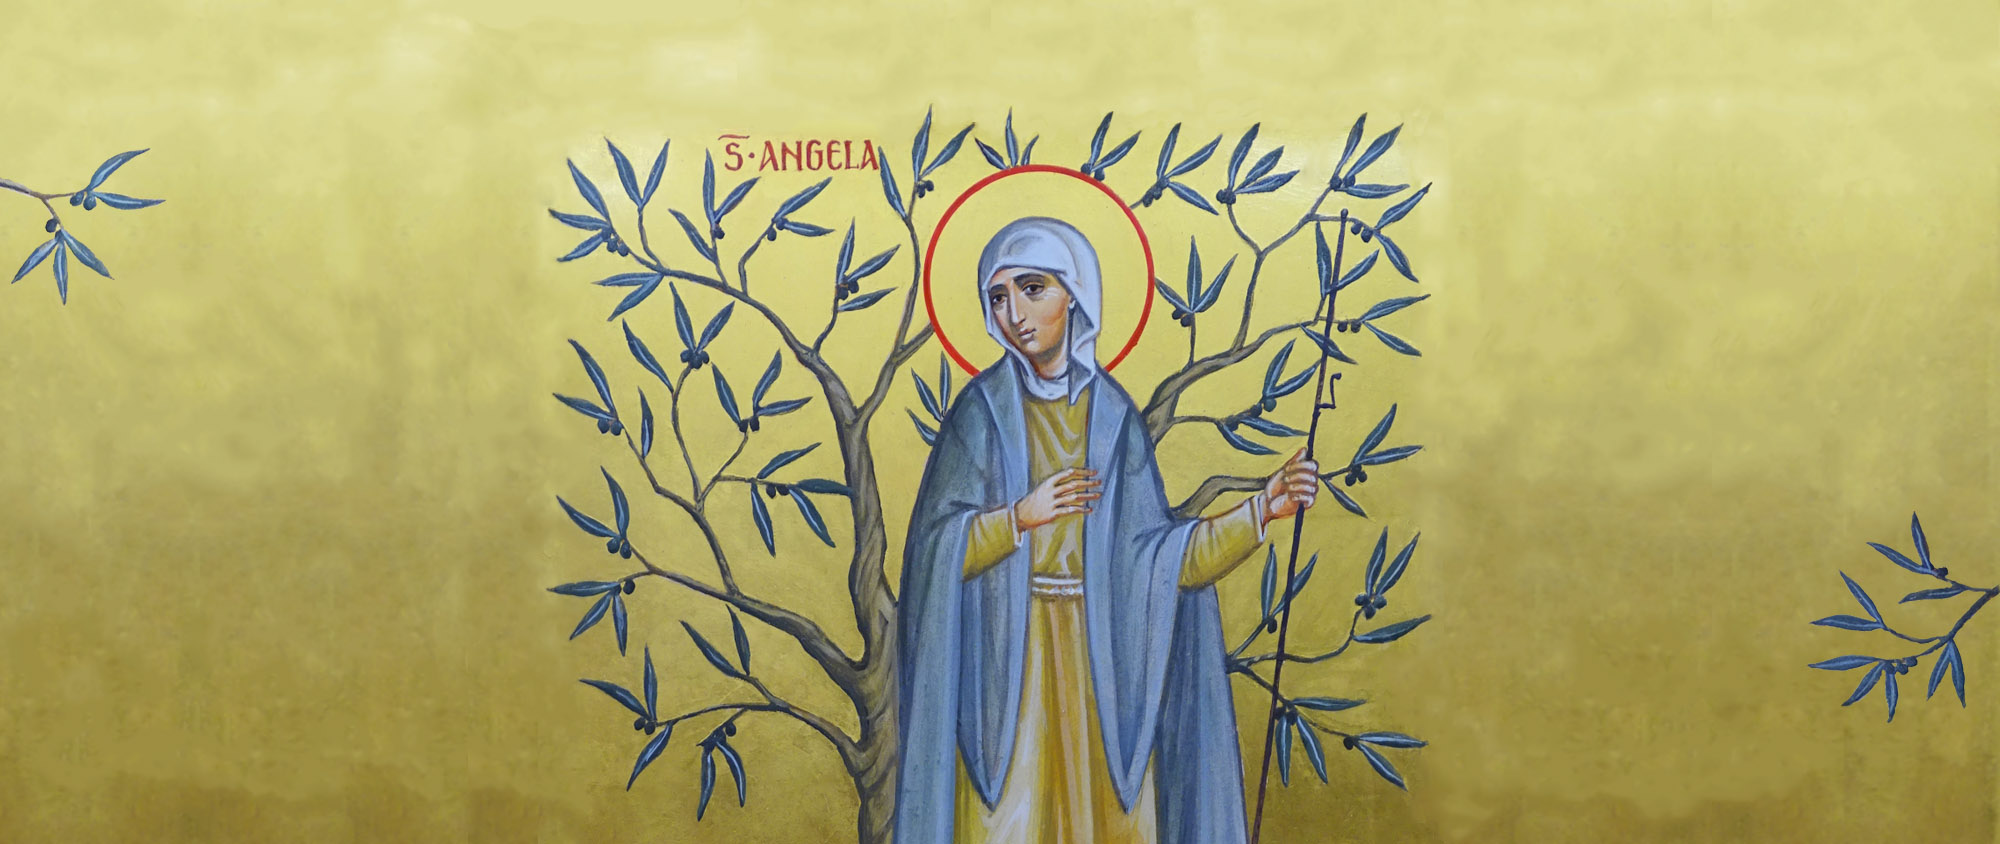 Sainte Angèle, olivier fécond dans la maison de Dieu, prie pour nous...